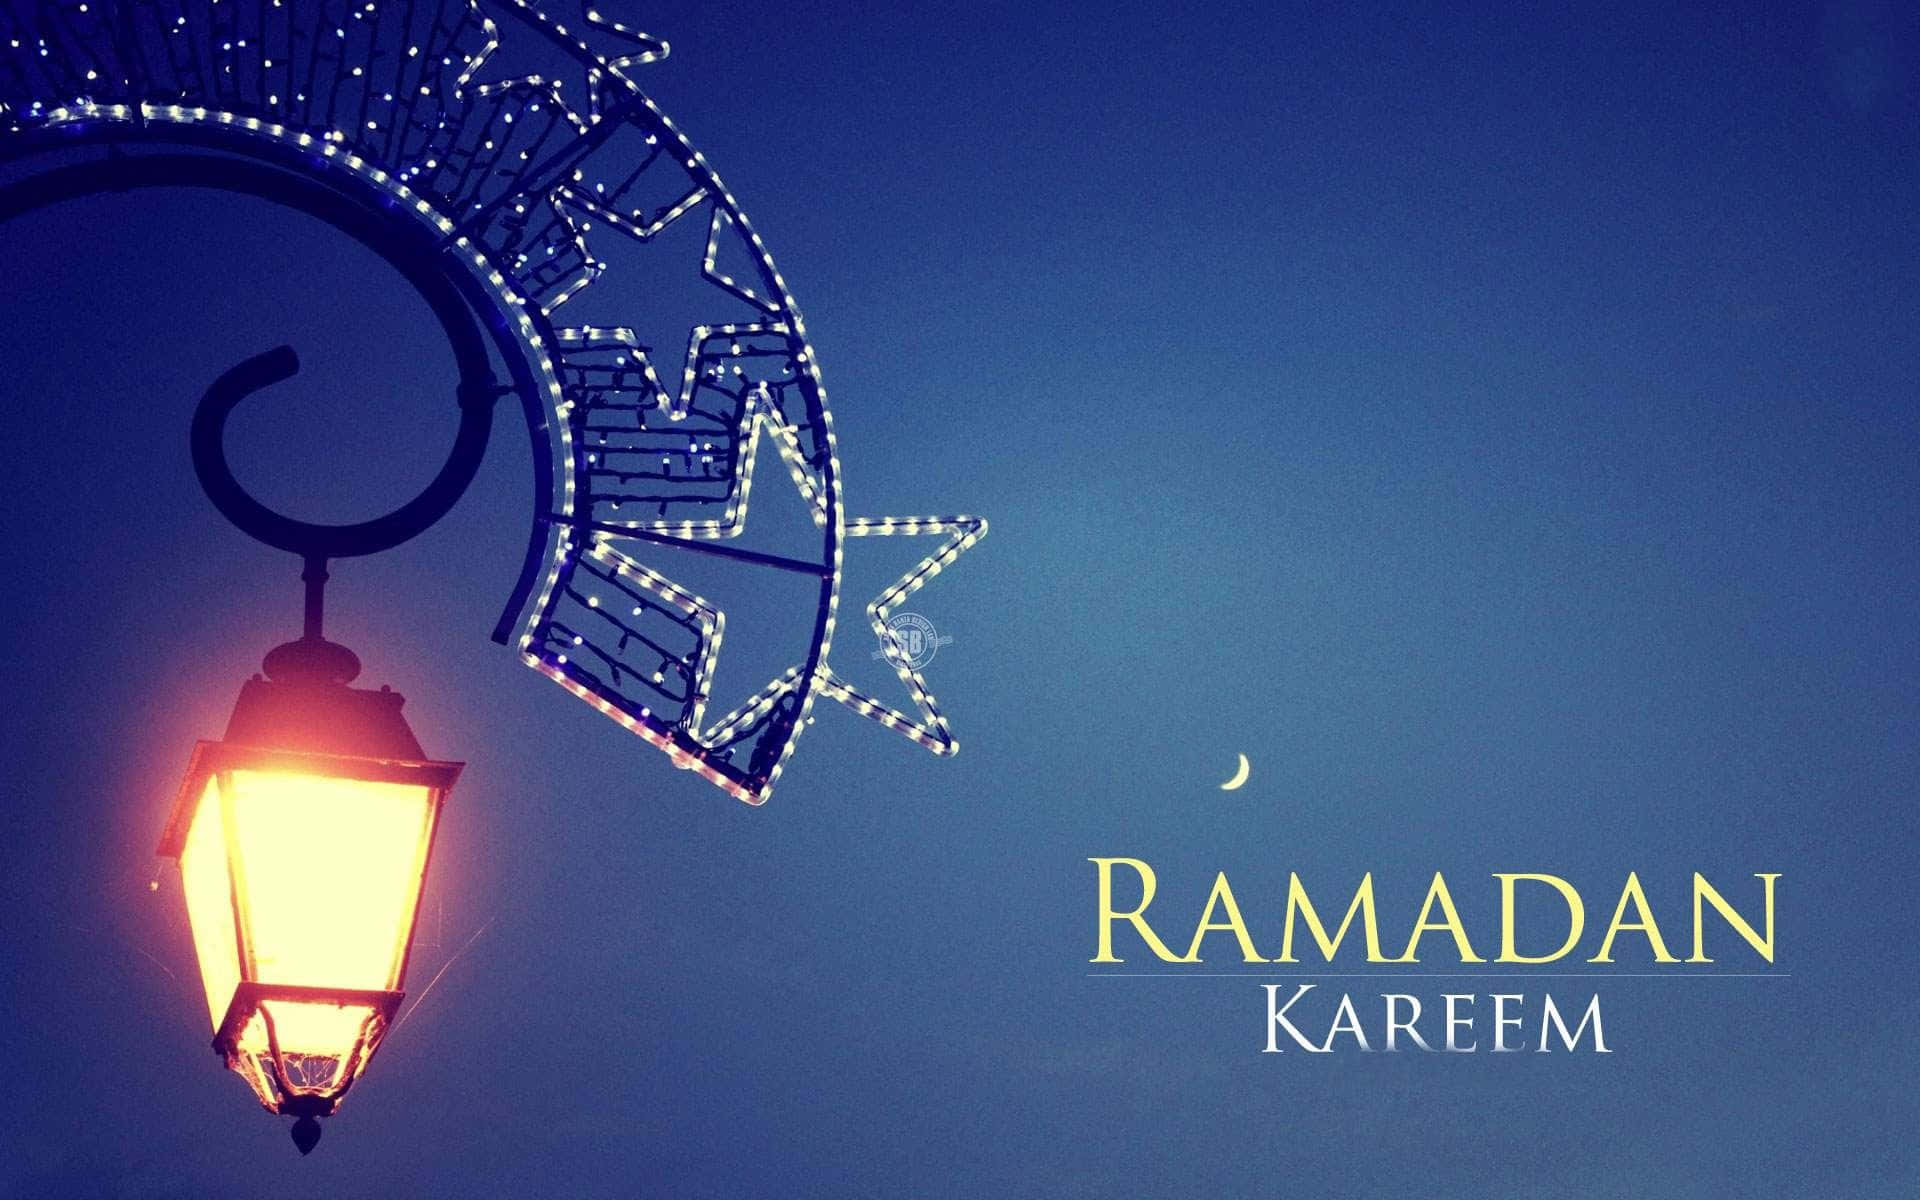 Ramadankareem - Feiern Sie Den Gesegneten Monat Mit Freunden Und Familie